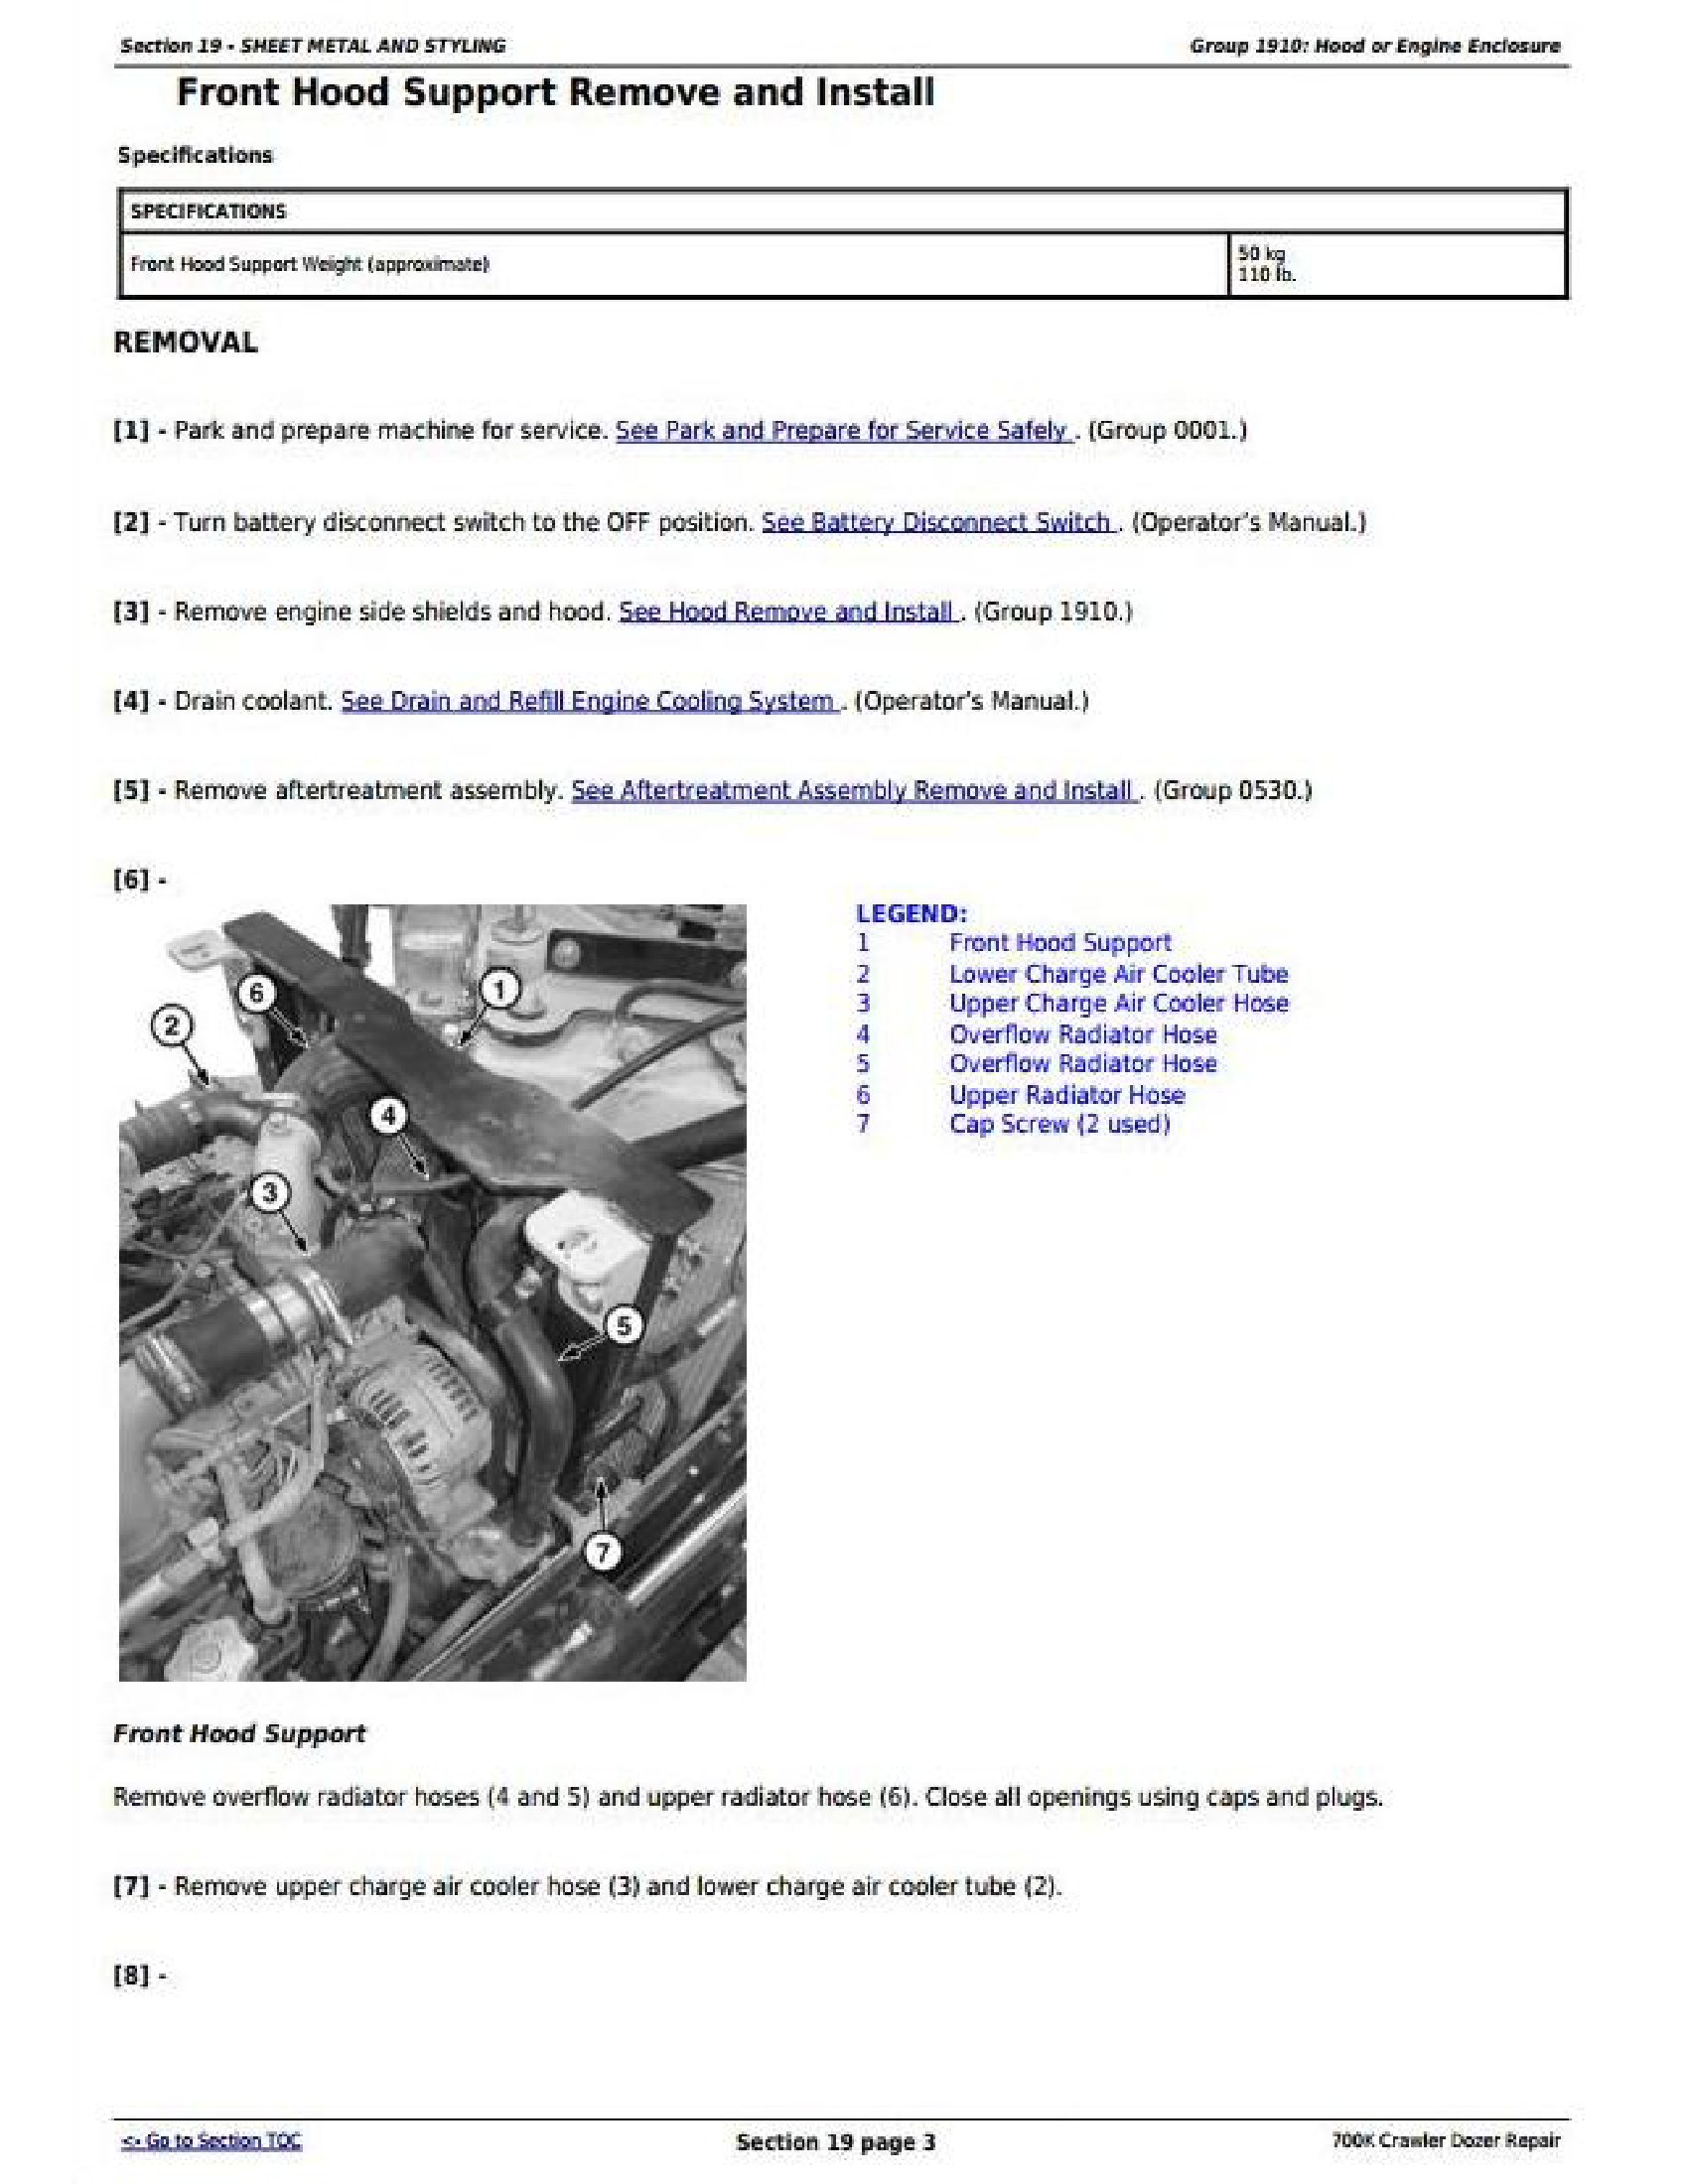 John Deere 700K manual pdf